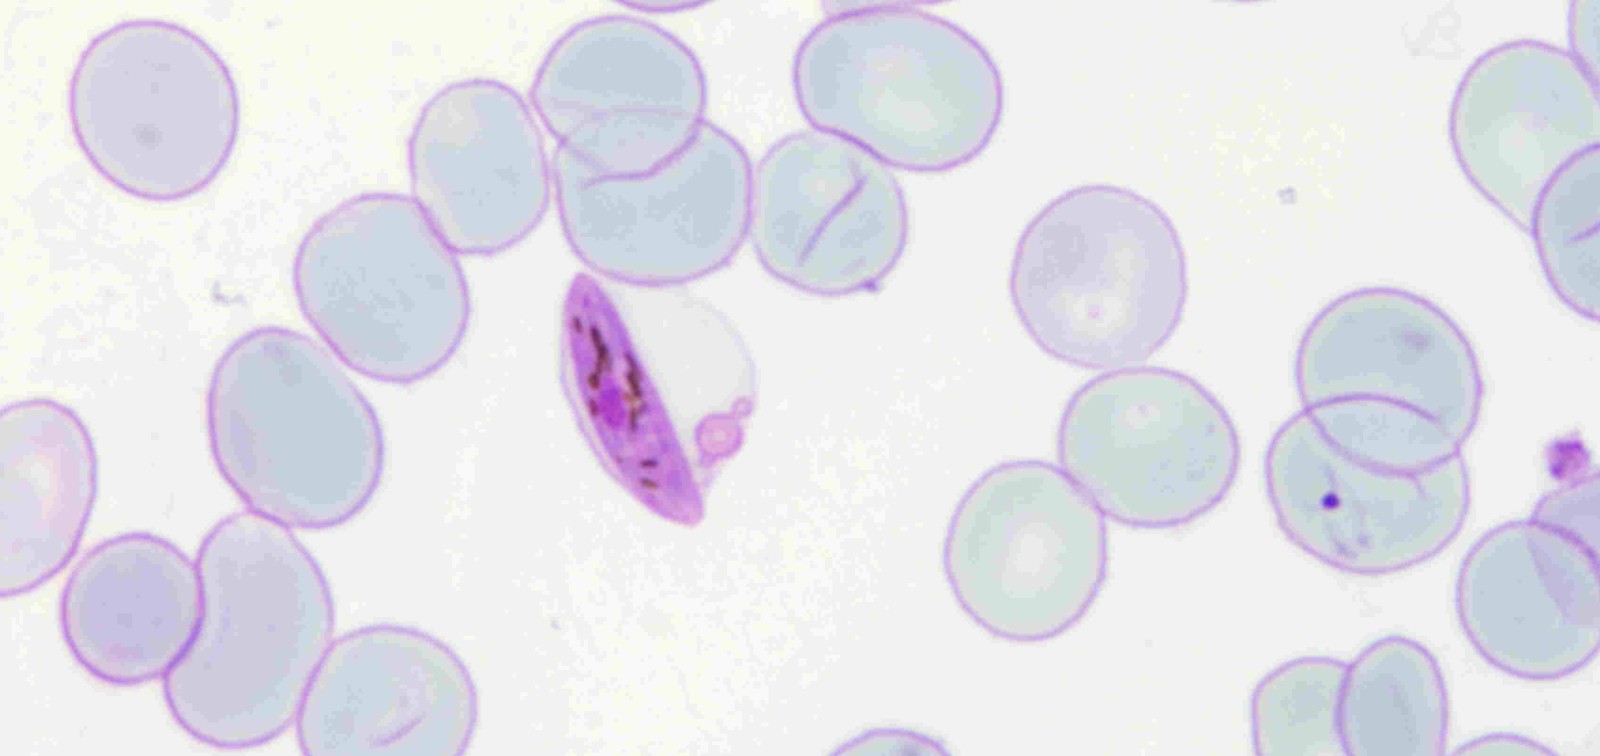 gametocito malaria parásito